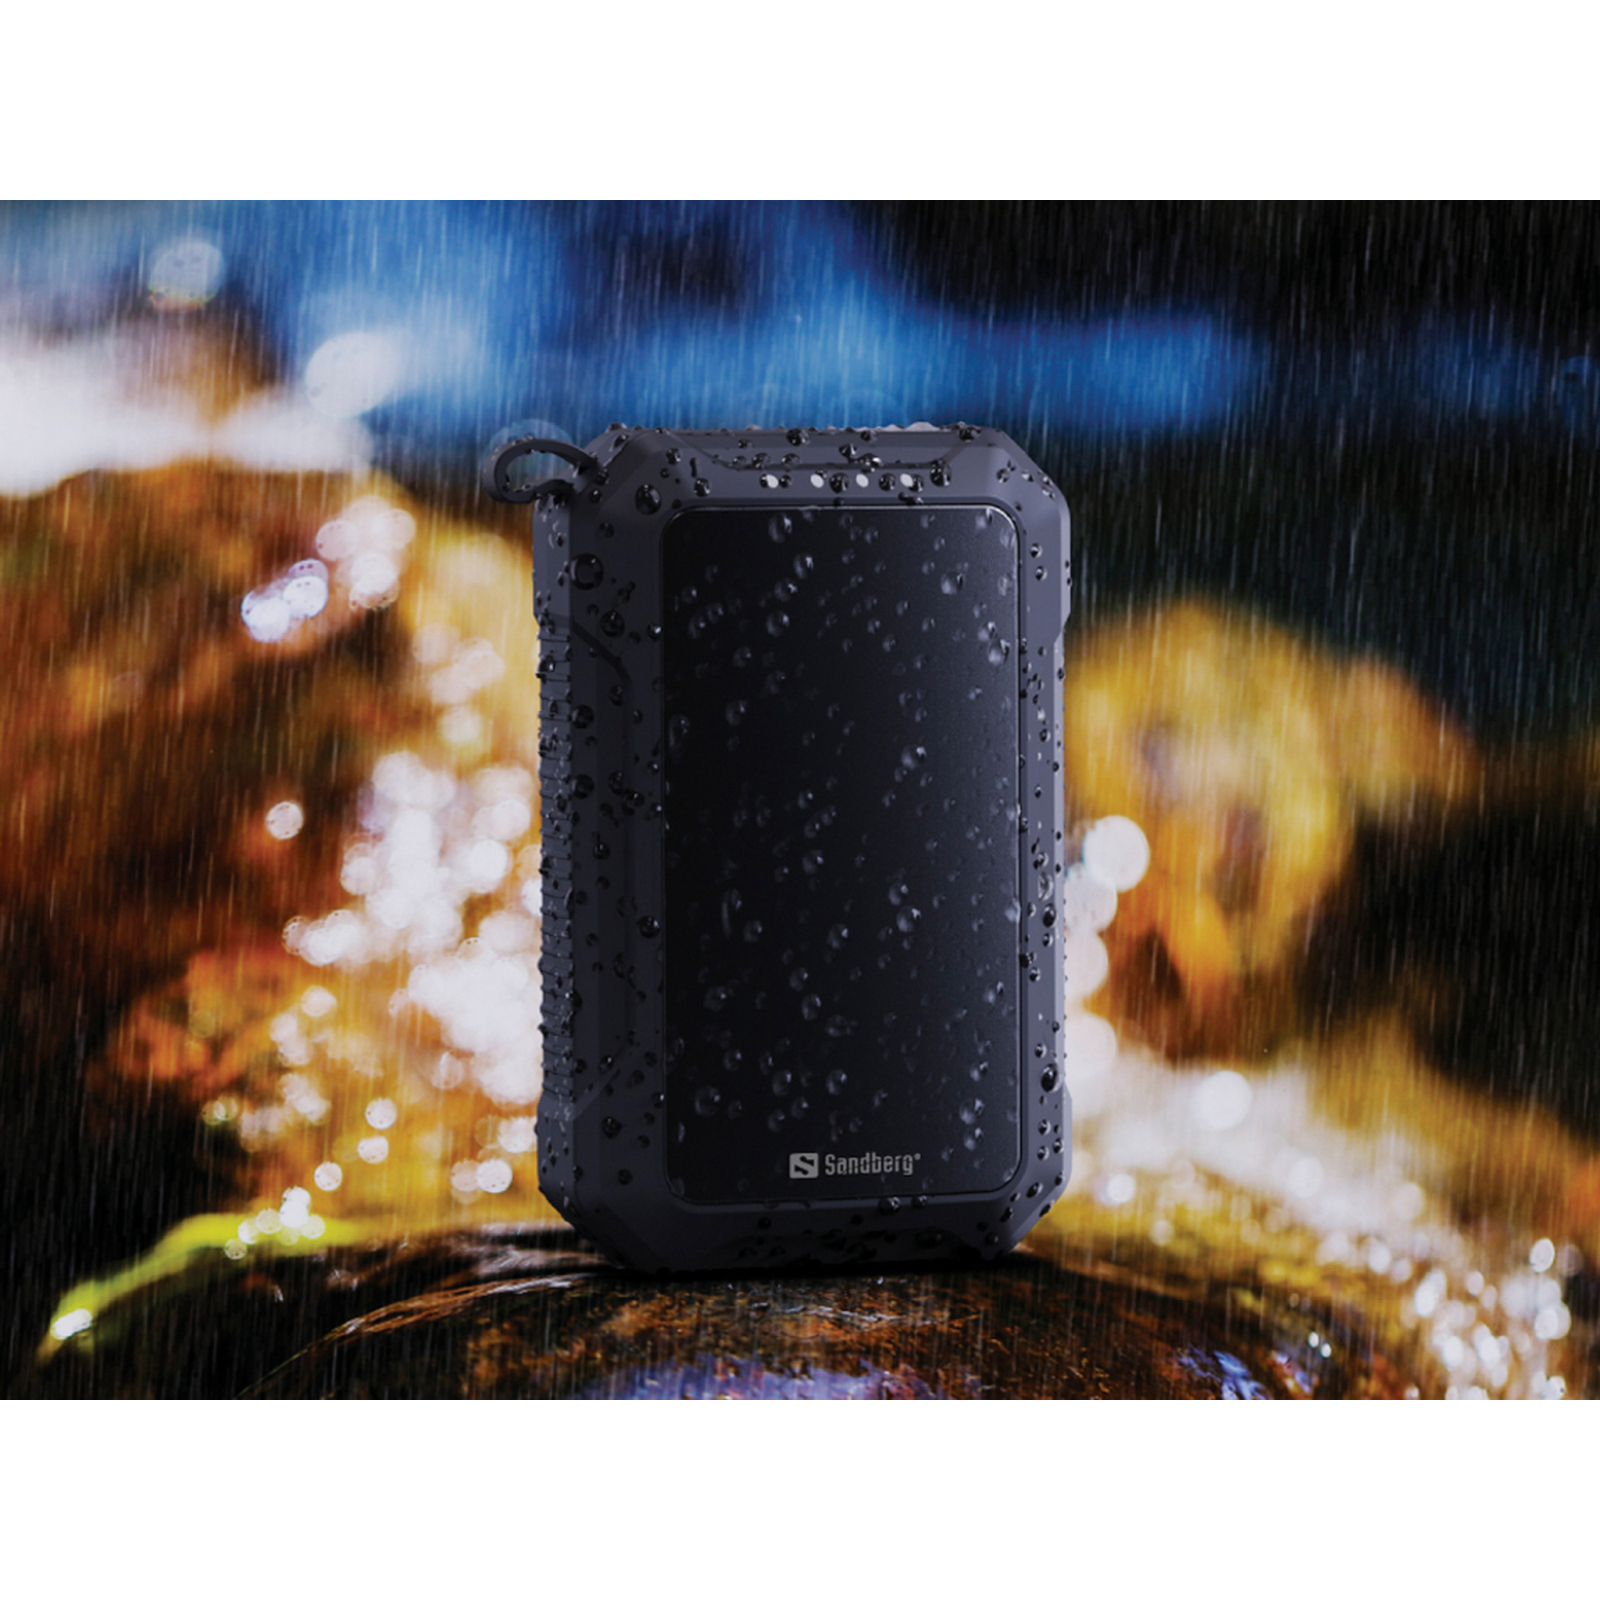 Батарея универсальная Sandberg 10000mAh, Hand Warmer, flashlight 1W, USB-C/USB-A 2A/5V (420-65) изображение 7